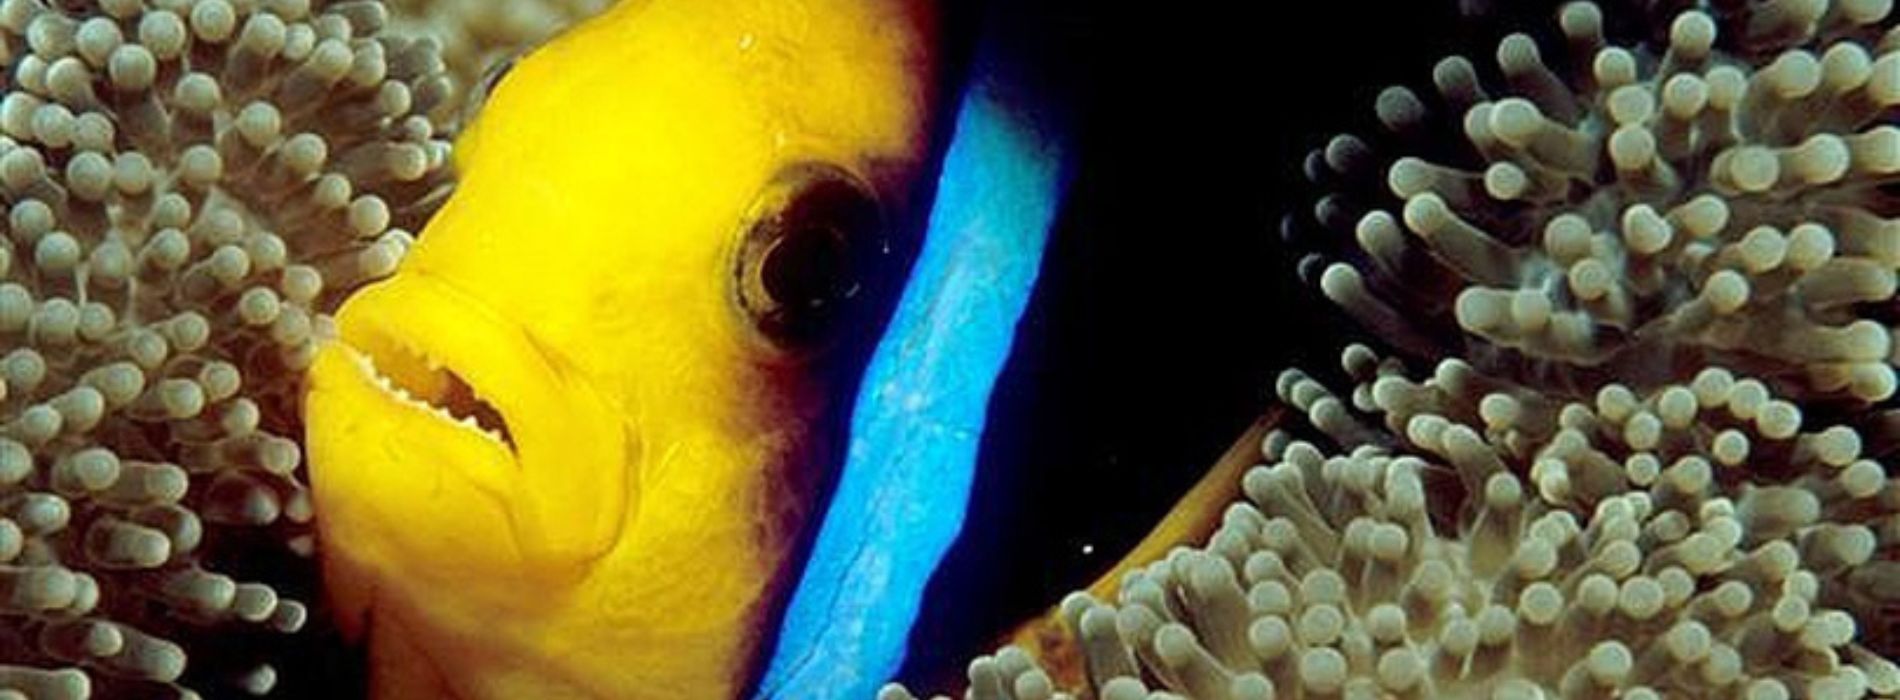 Orangeflossen-Anemonenfisch, der sich im Riff versteckt